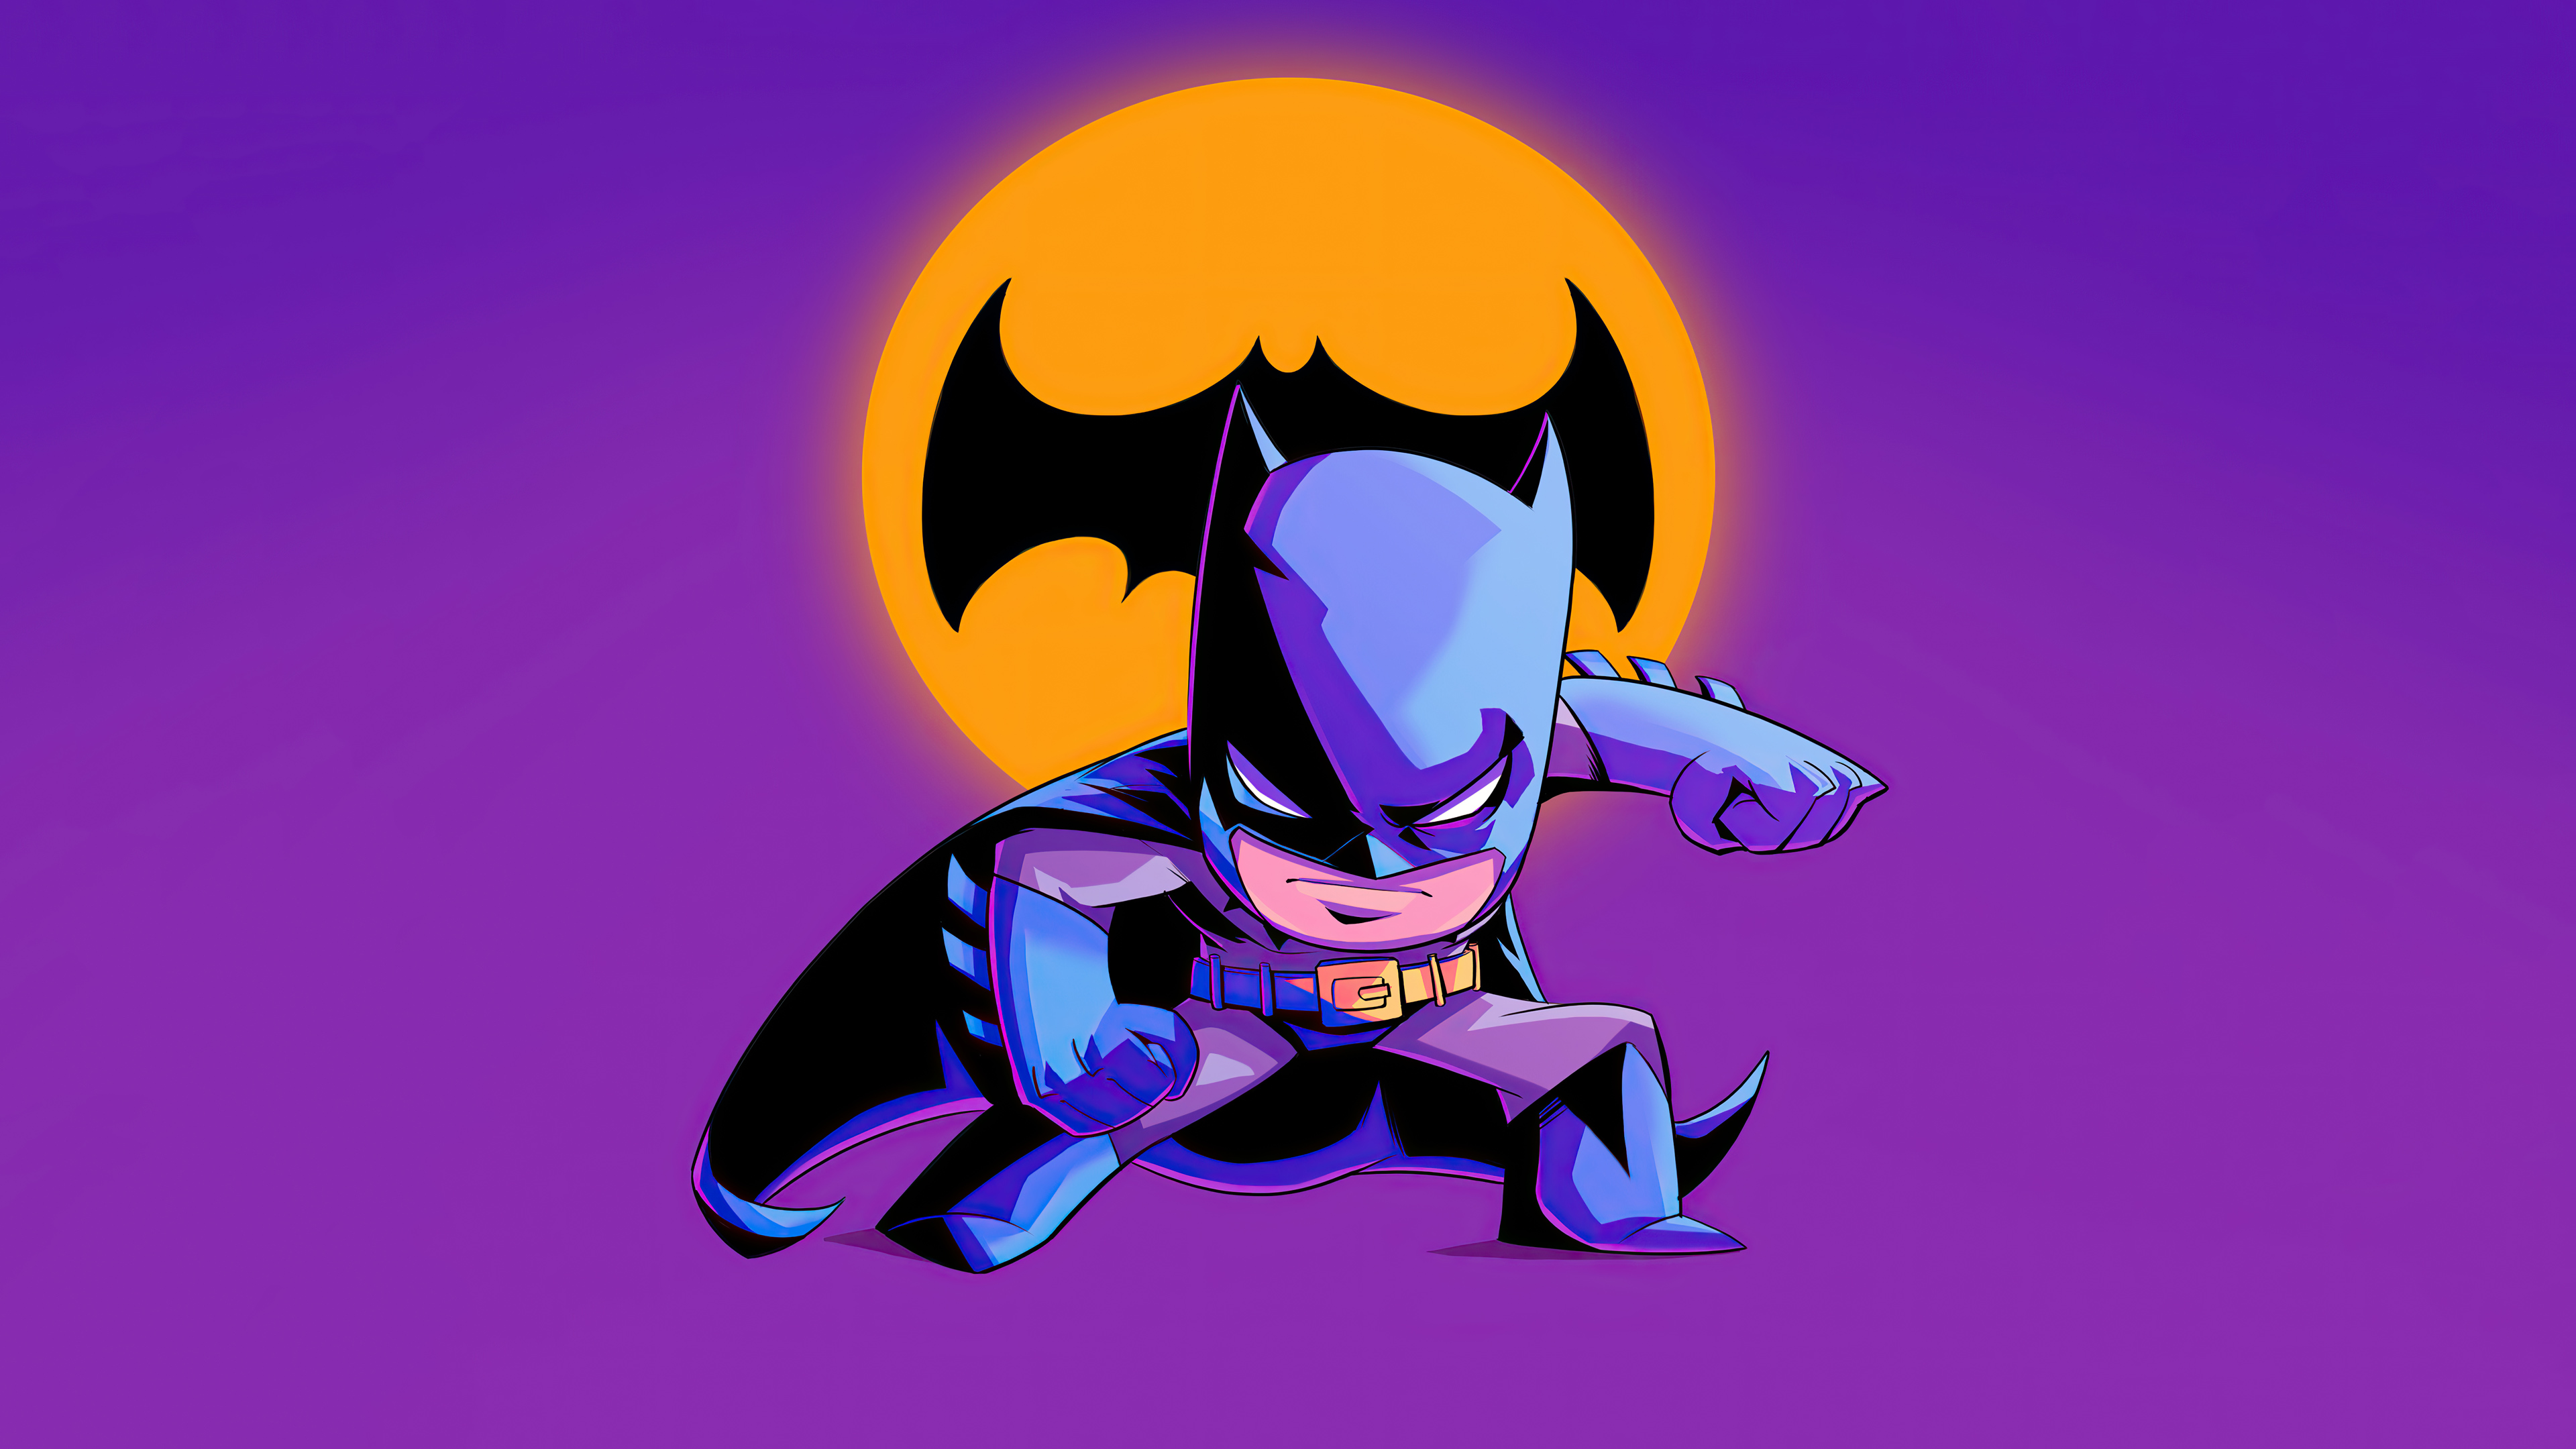 Những hình ảnh của Batman Chibi Wallpaper 4k Ultra HD mới nhất cập nhật đến năm 2024 sẽ khiến bạn sửng sốt và phấn khích. Với những chi tiết nhỏ nhặt, hình ảnh đẹp mắt và đầy quyến rũ, bạn sẽ chìm đắm trong thế giới của \